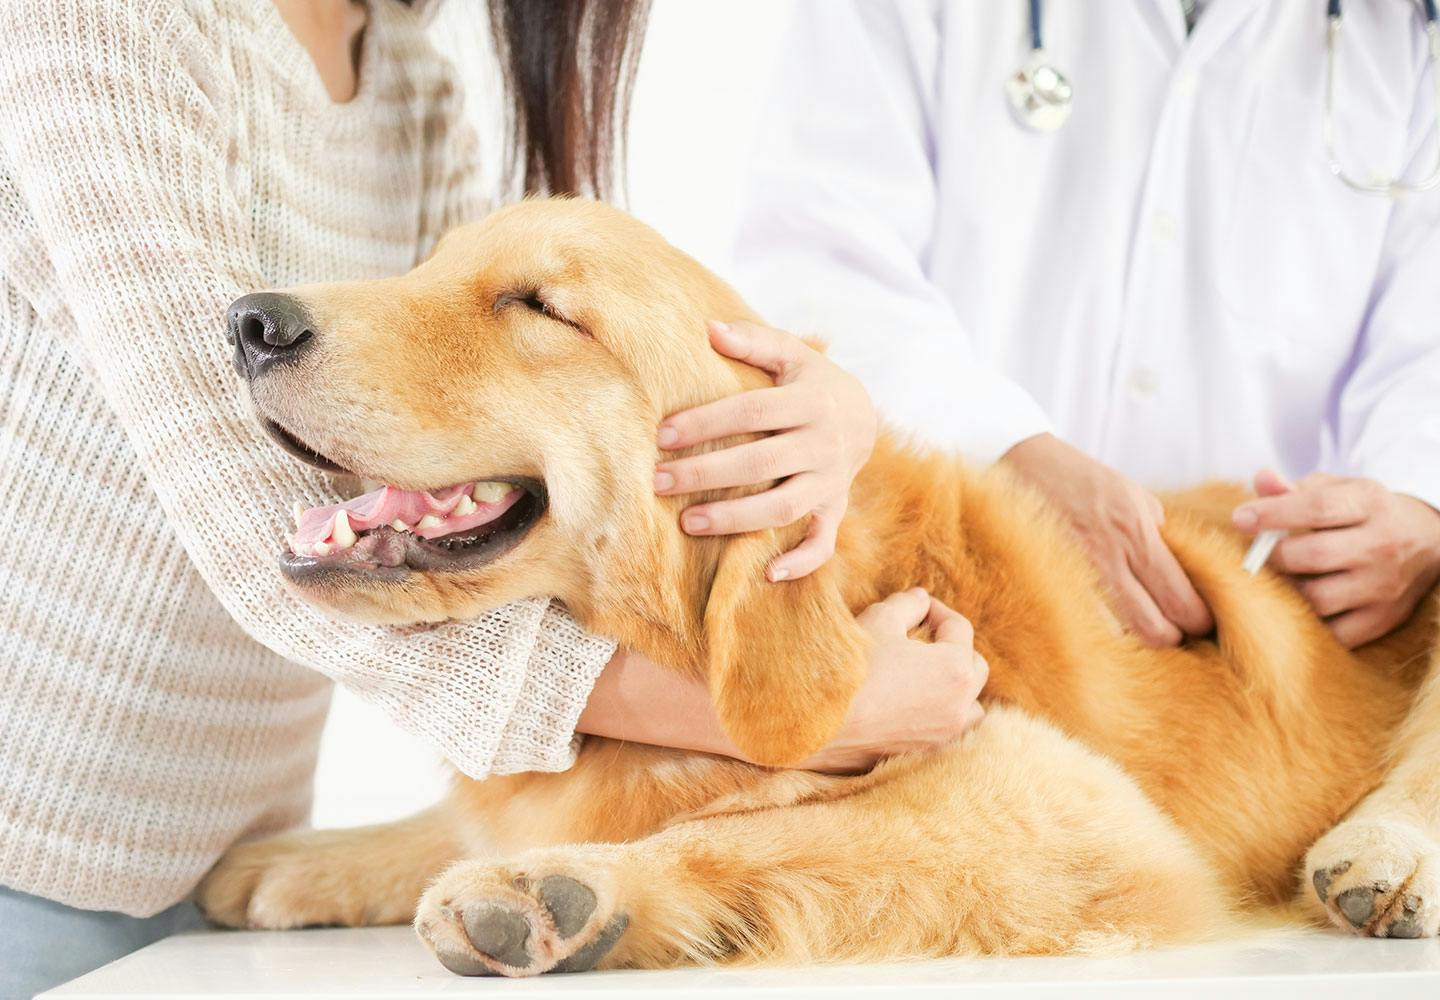 犬の下痢の原因とは 病院に行くべき危険な症状や対処法 日常生活での予防策などについて解説 獣医師監修 Illness 病気 わんクォール